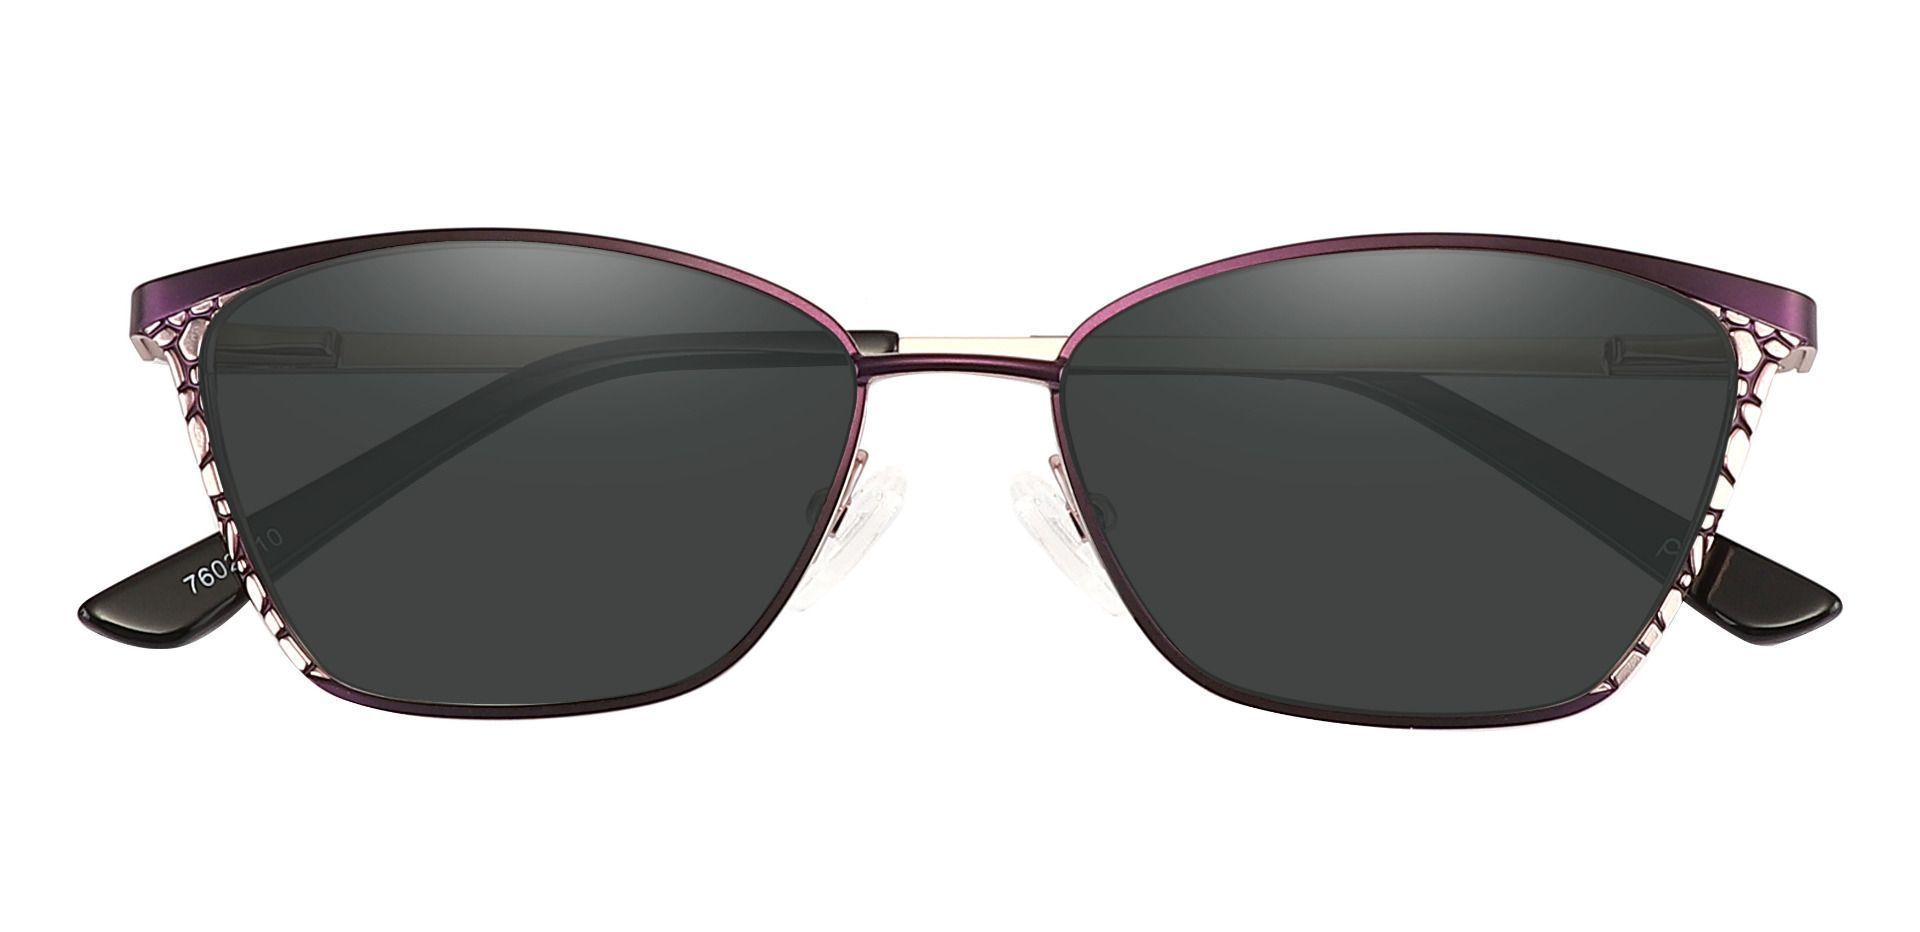 Solange Cat Eye Reading Sunglasses - Purple Frame With Gray Lenses